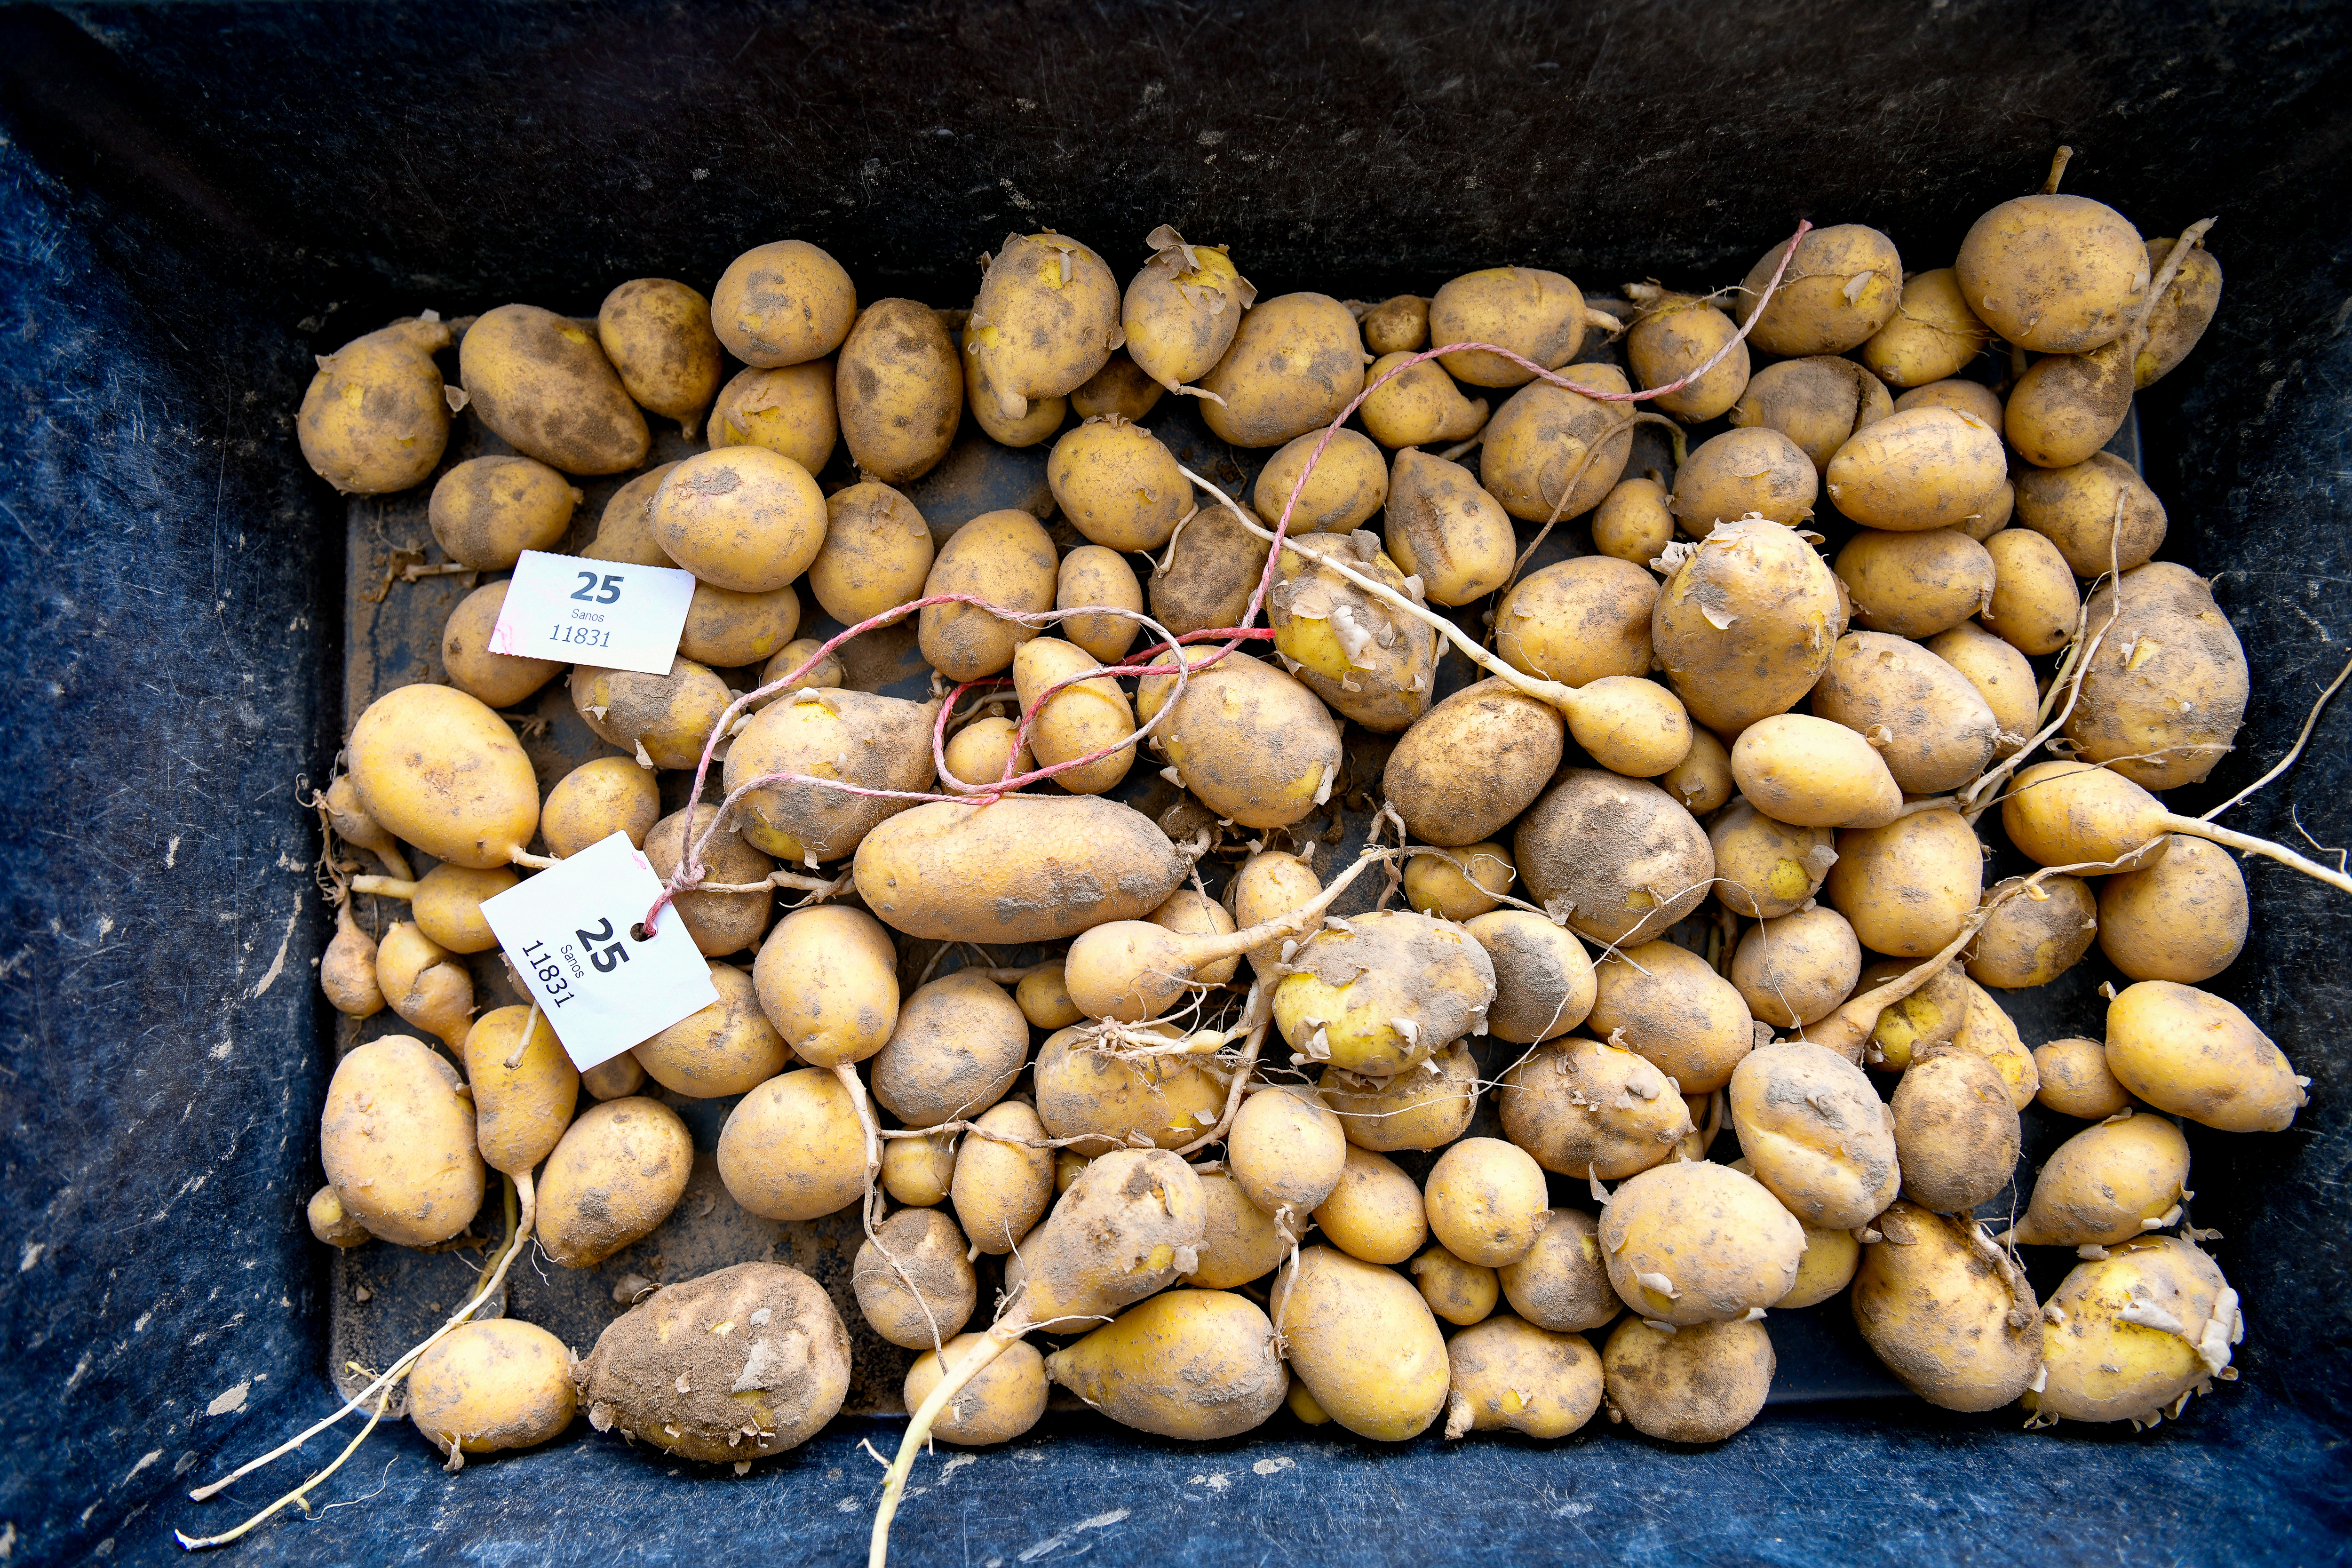 Kartoffelforschung und -züchtung haben in Groß Lüsewitz eine lange Tradition.